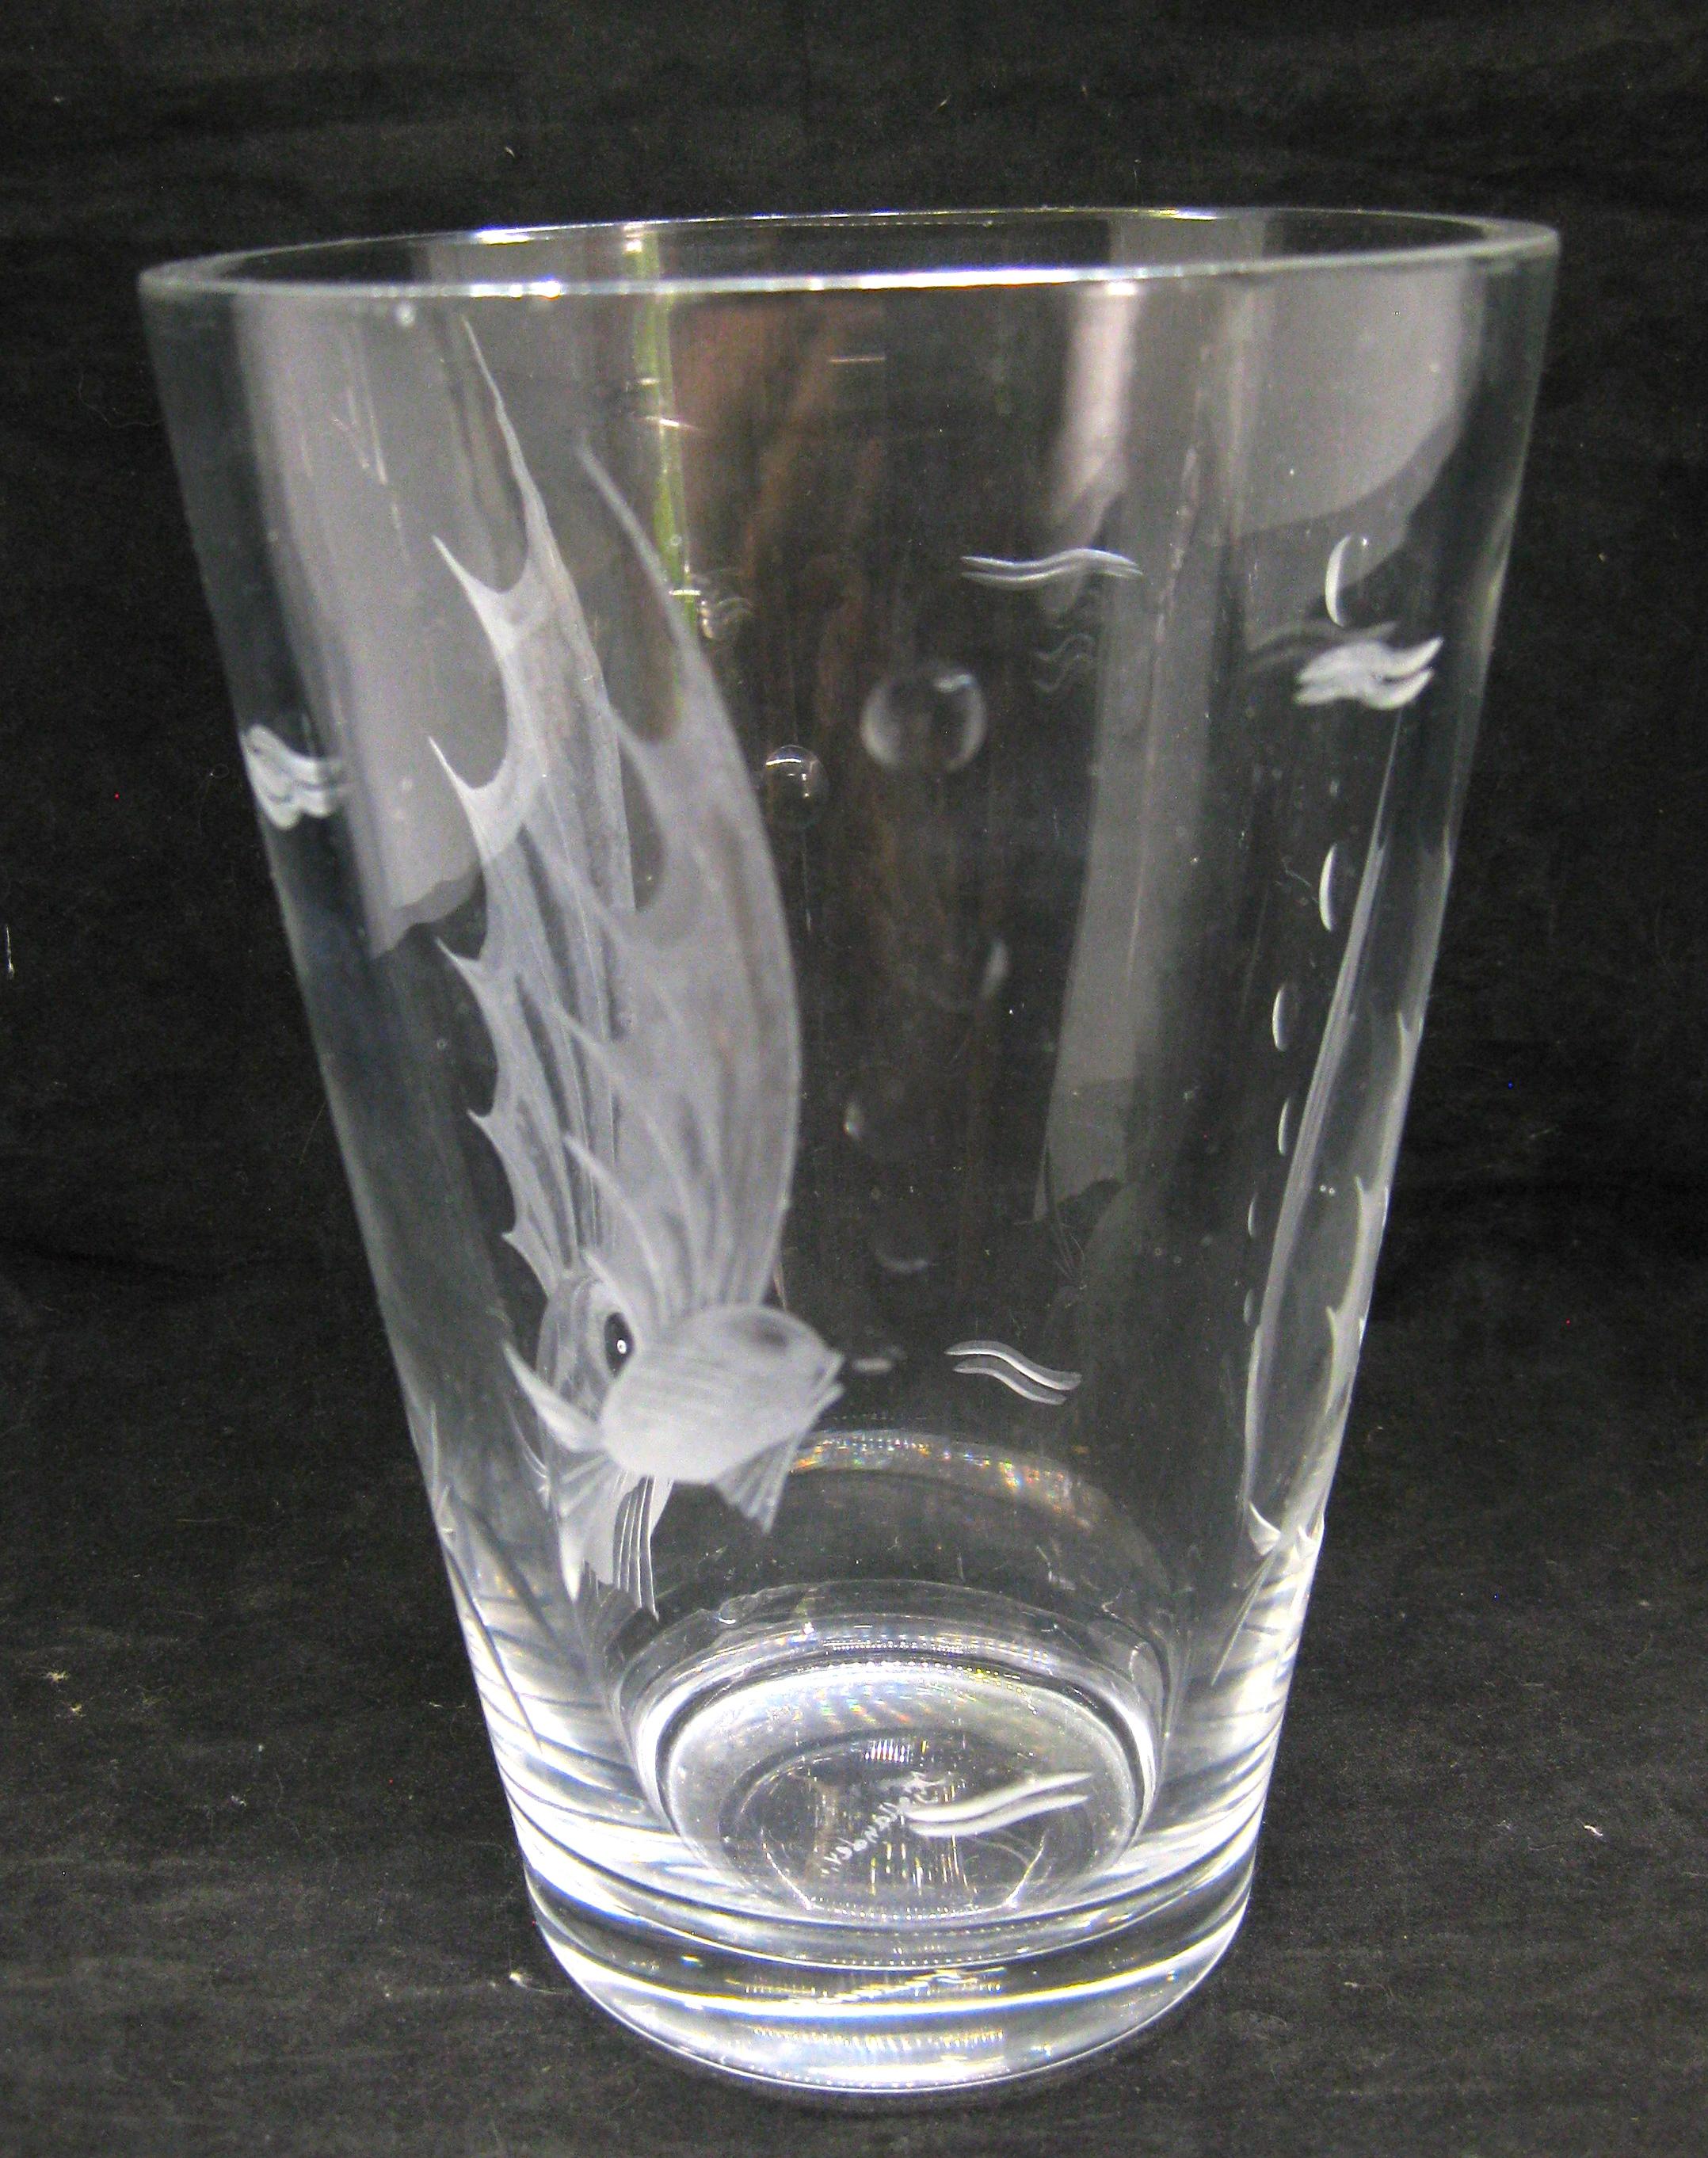 Magnifique vase en verre art déco de Lard Kjellander datant des années 1930 et fabriqué en Suède. Poisson ange gravé et bulles sur les côtés. Signé en bas par l'artiste. Probablement réalisé pour Kosta Boda ou Orrefors. En très bon état pour son